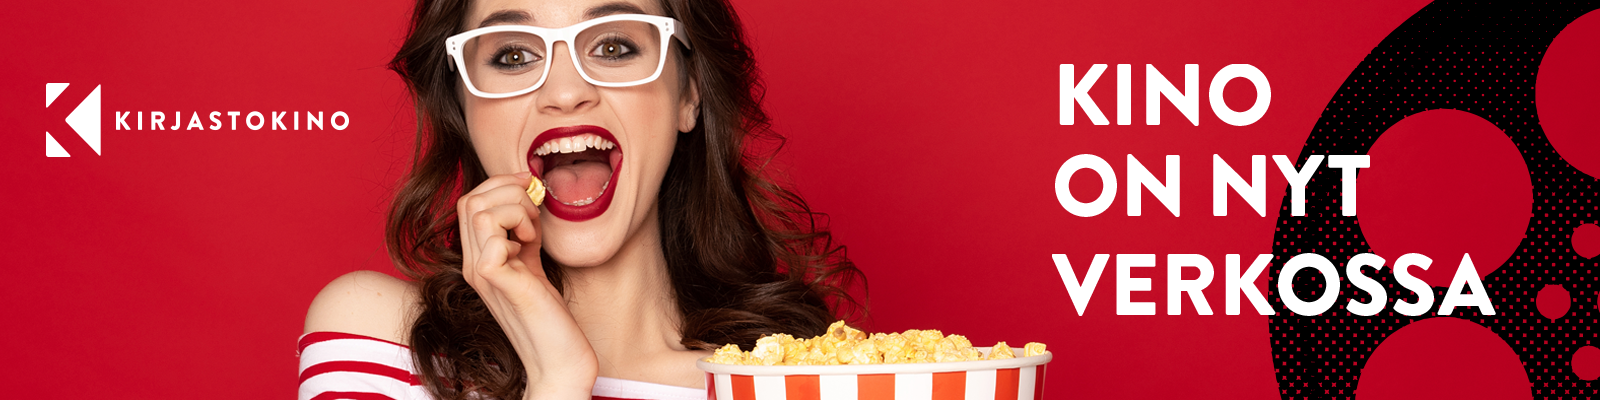 Kirjastokinon mainoskuva, jossa iloinen popcornia syövä nuori nainen